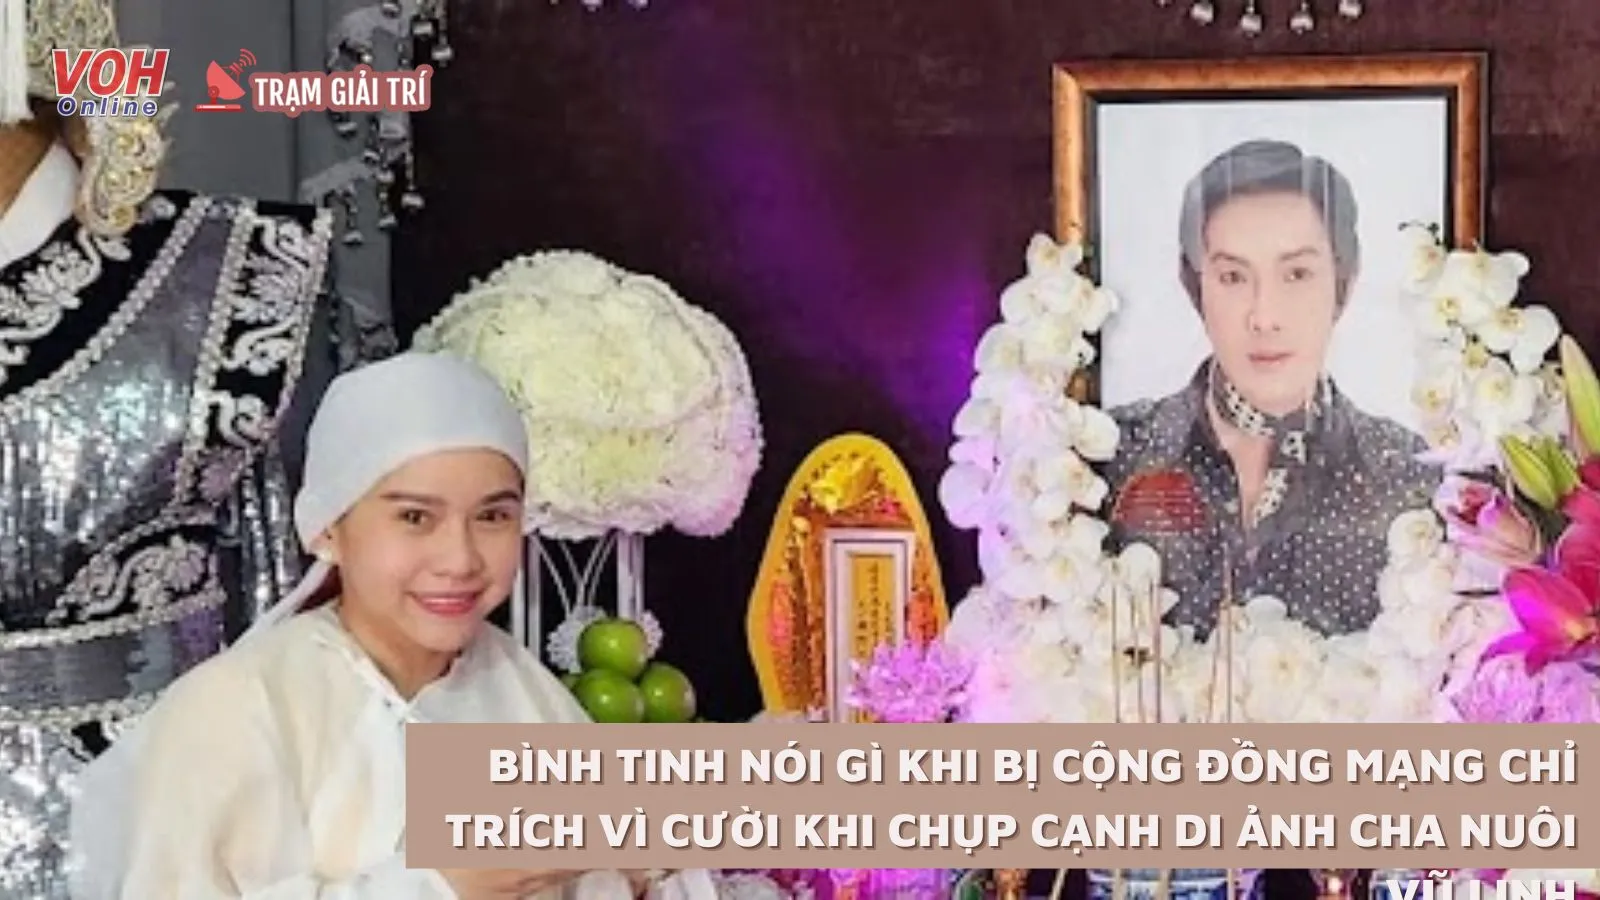 Bình Tinh nói gì khi bị cộng đồng mạng chỉ trích vì cười khi chụp cạnh di ảnh cha nuôi Vũ Linh